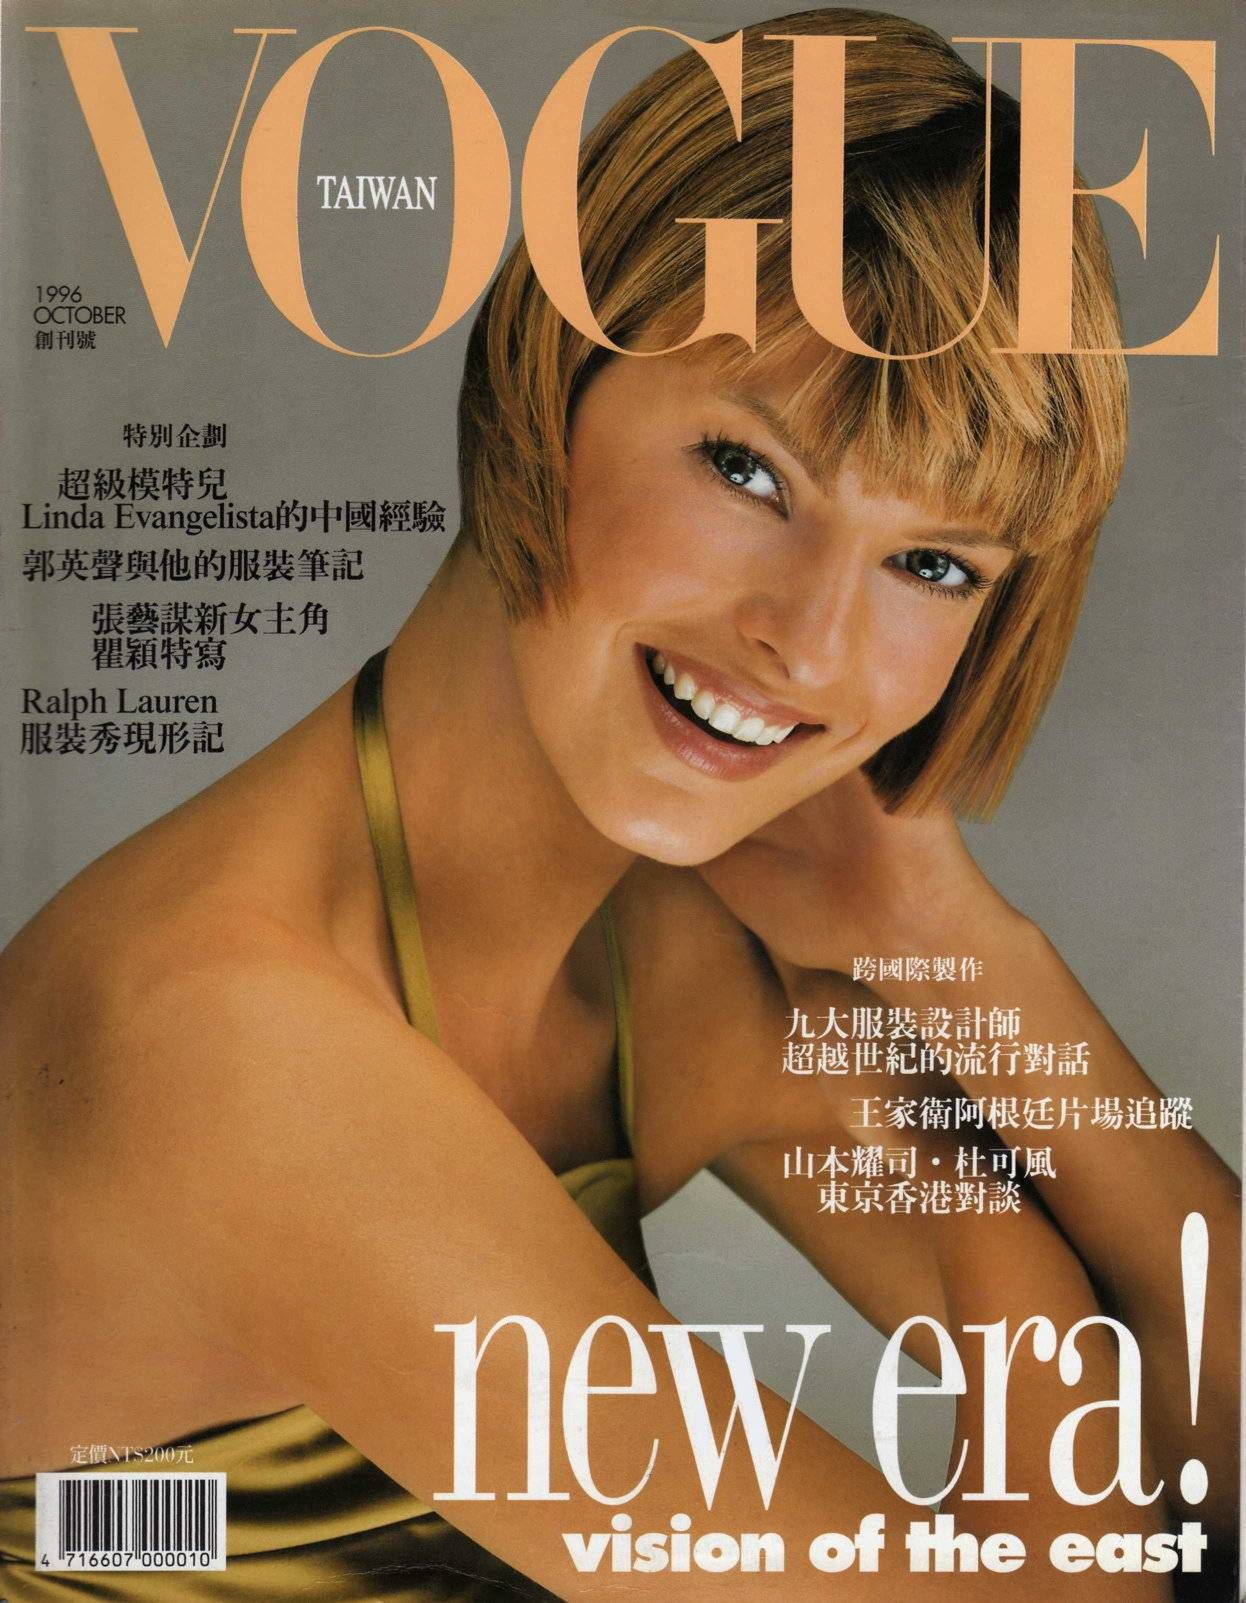 Vogue Taiwan – pierwsza okładka – Linda Evangelista